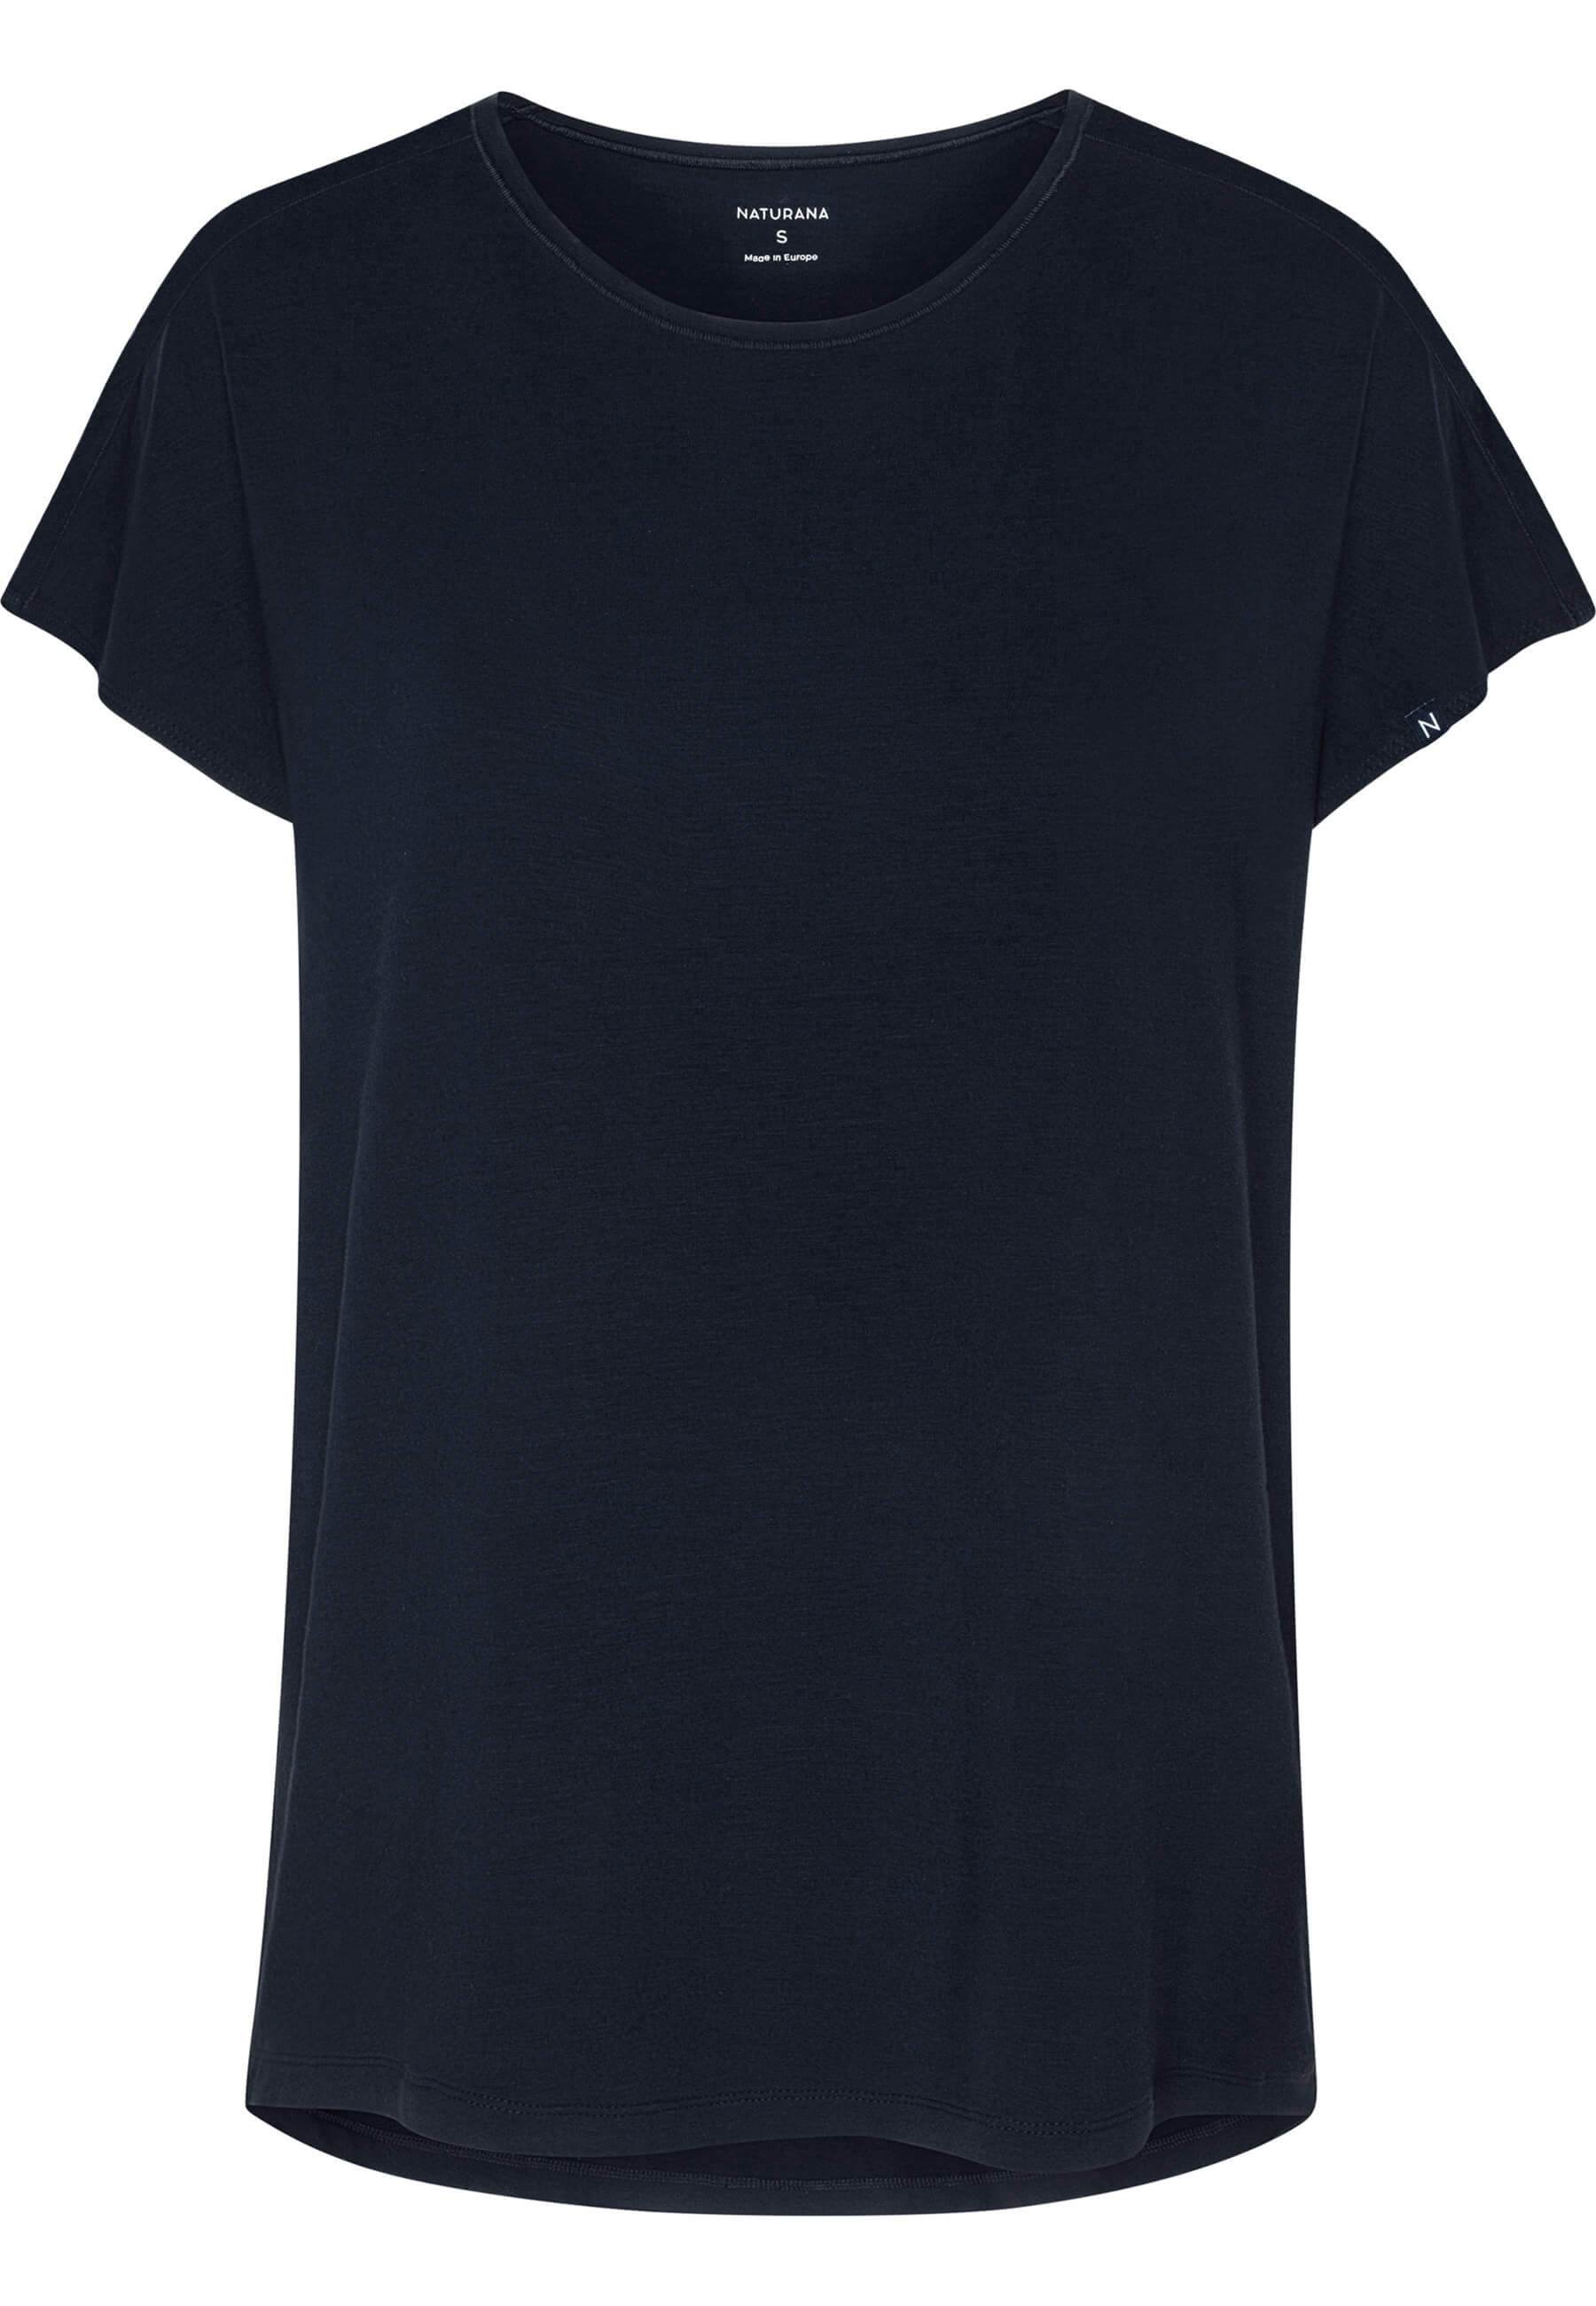 T-Shirt with Mesh Details - Big Break - Dark Blue